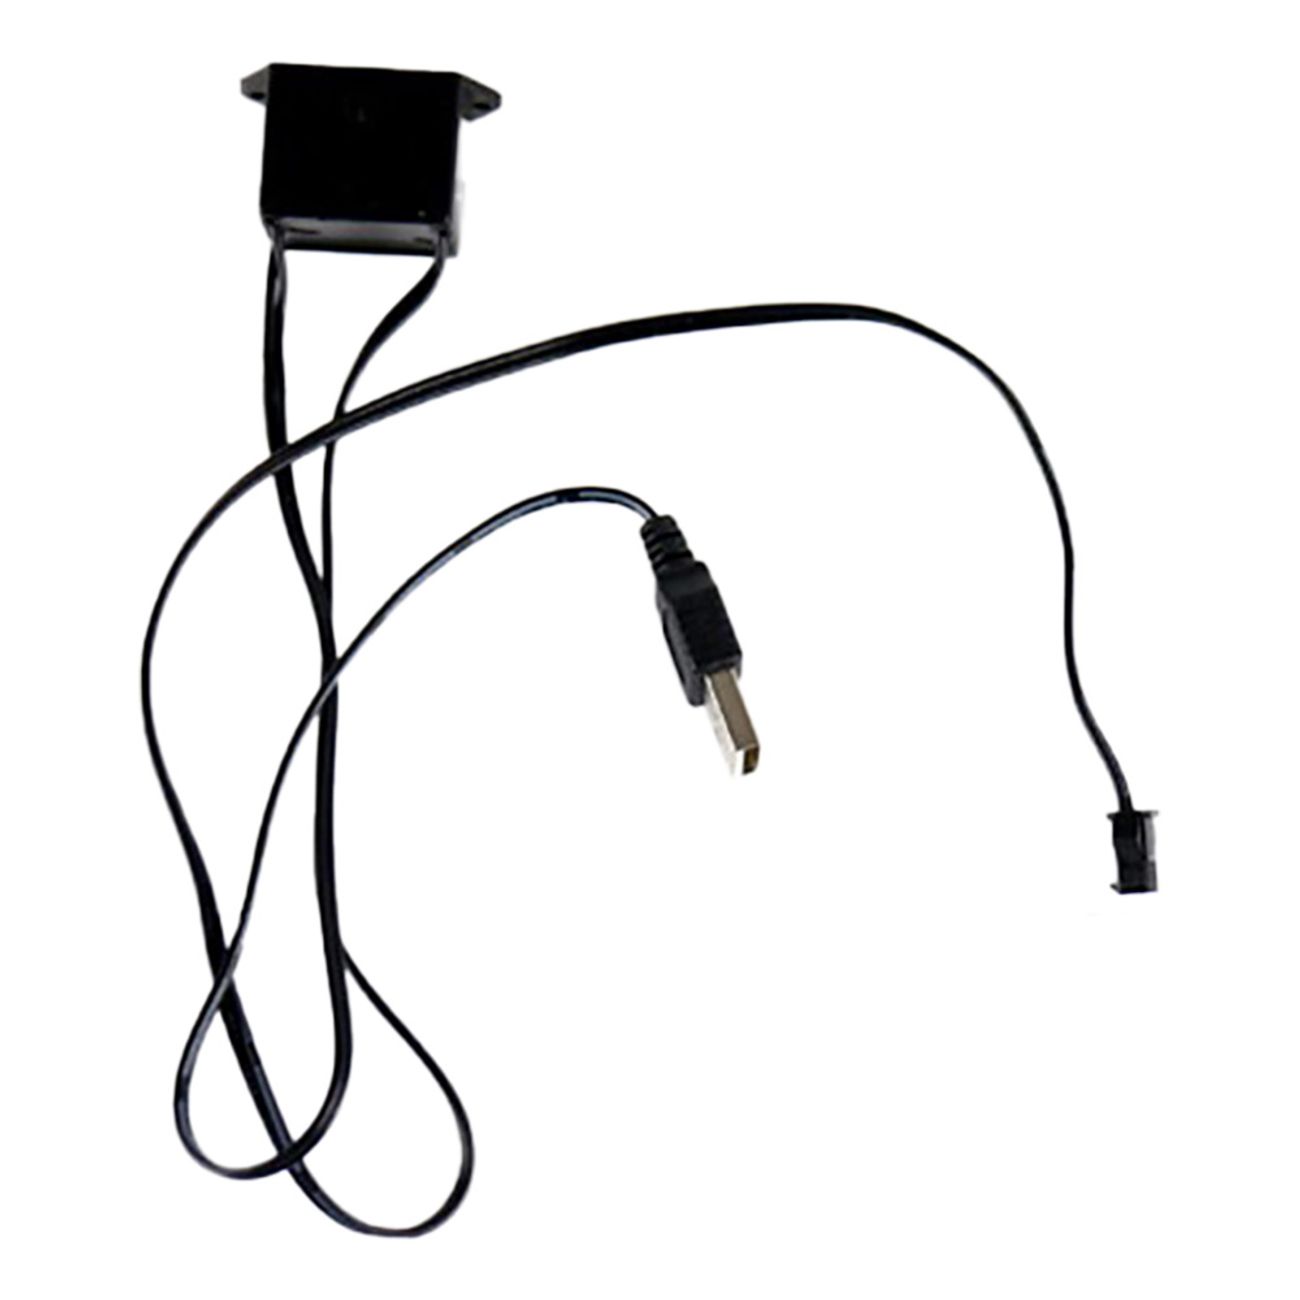 el-wire-usb-adapter-82735-1